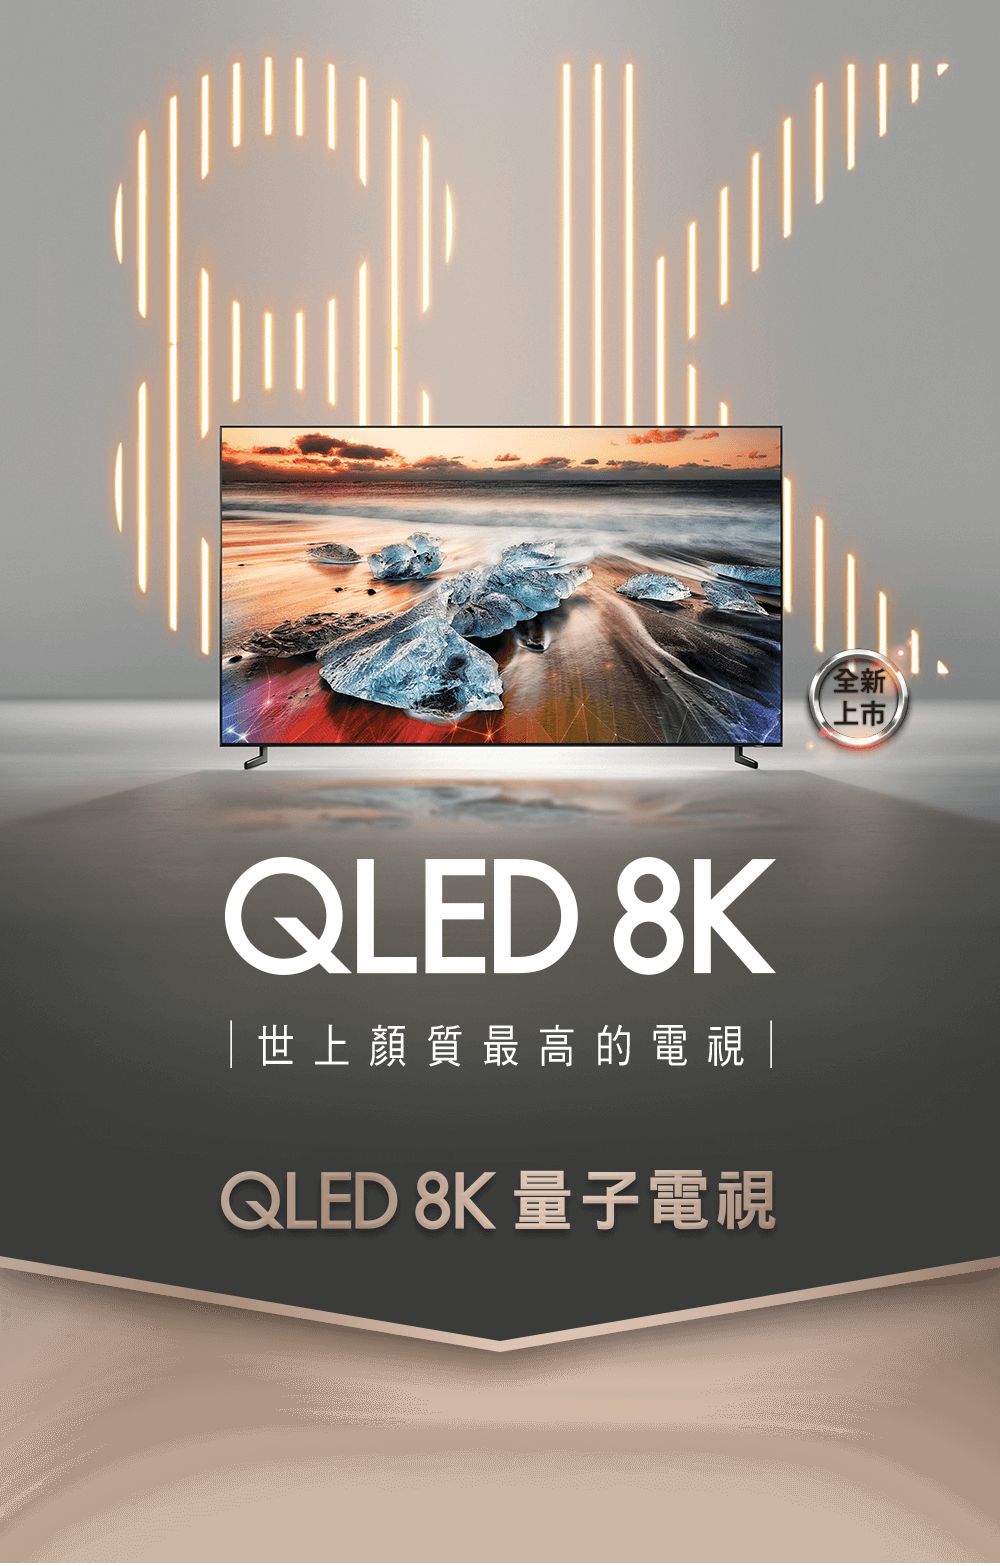 Samsung 三星 世上顏質最高的電視 QLED 8K量子電視